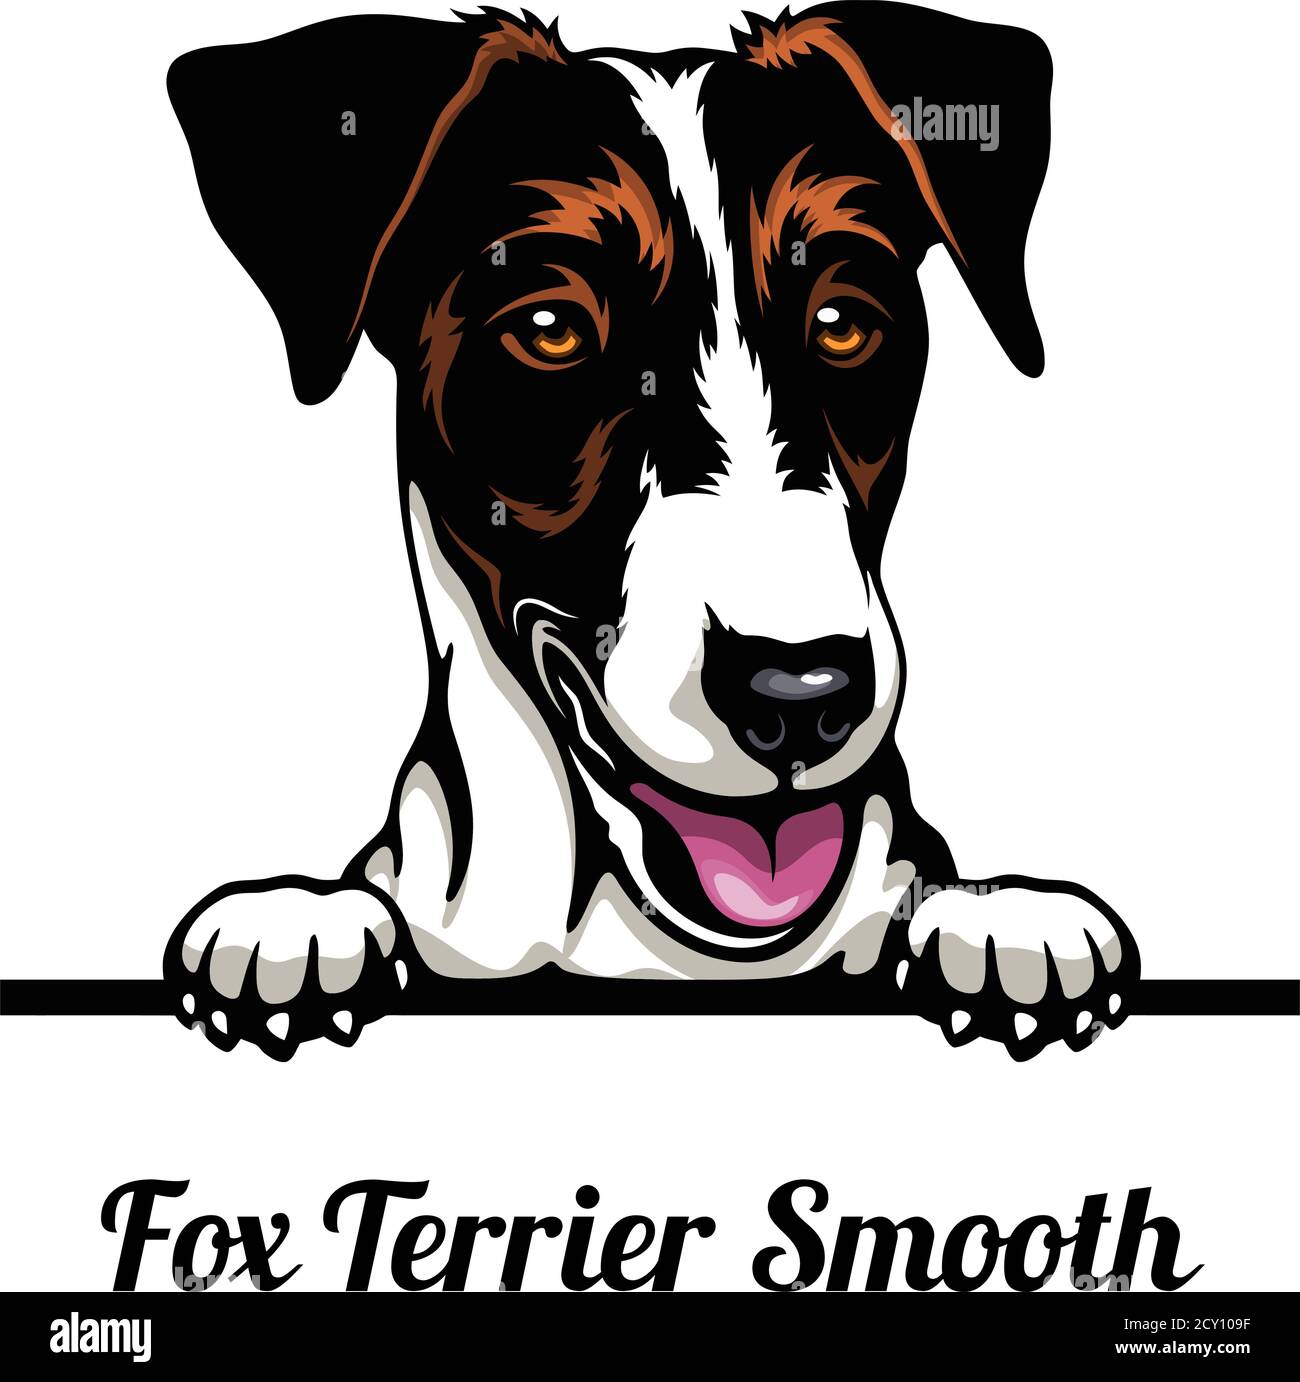 Tête Fox Terrier Smooth - chien race. Image couleur d'une tête de chien isolée sur un fond blanc Illustration de Vecteur